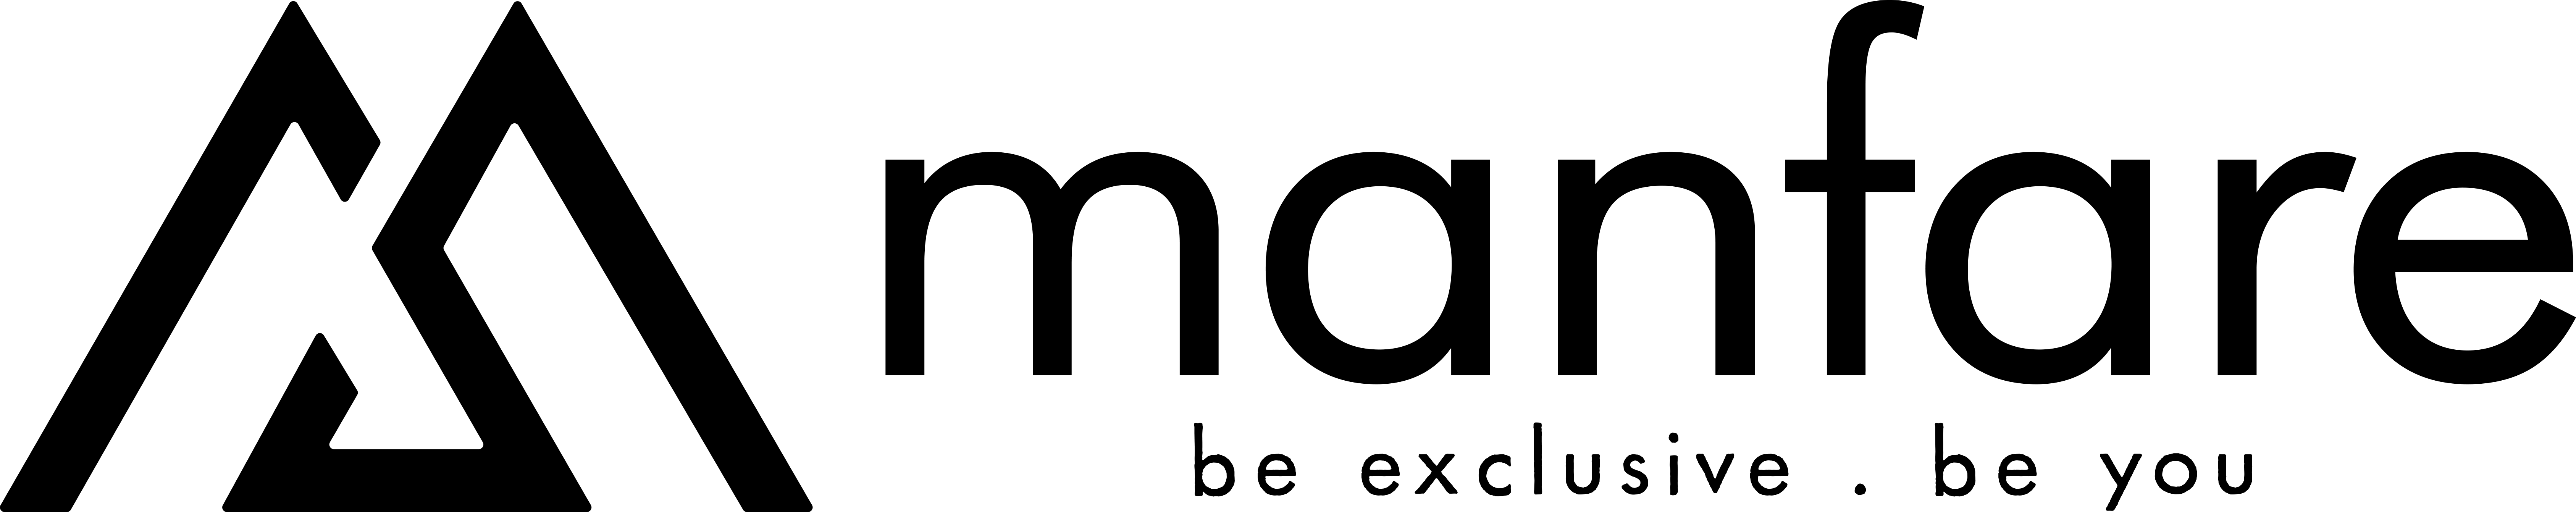 manfare logo